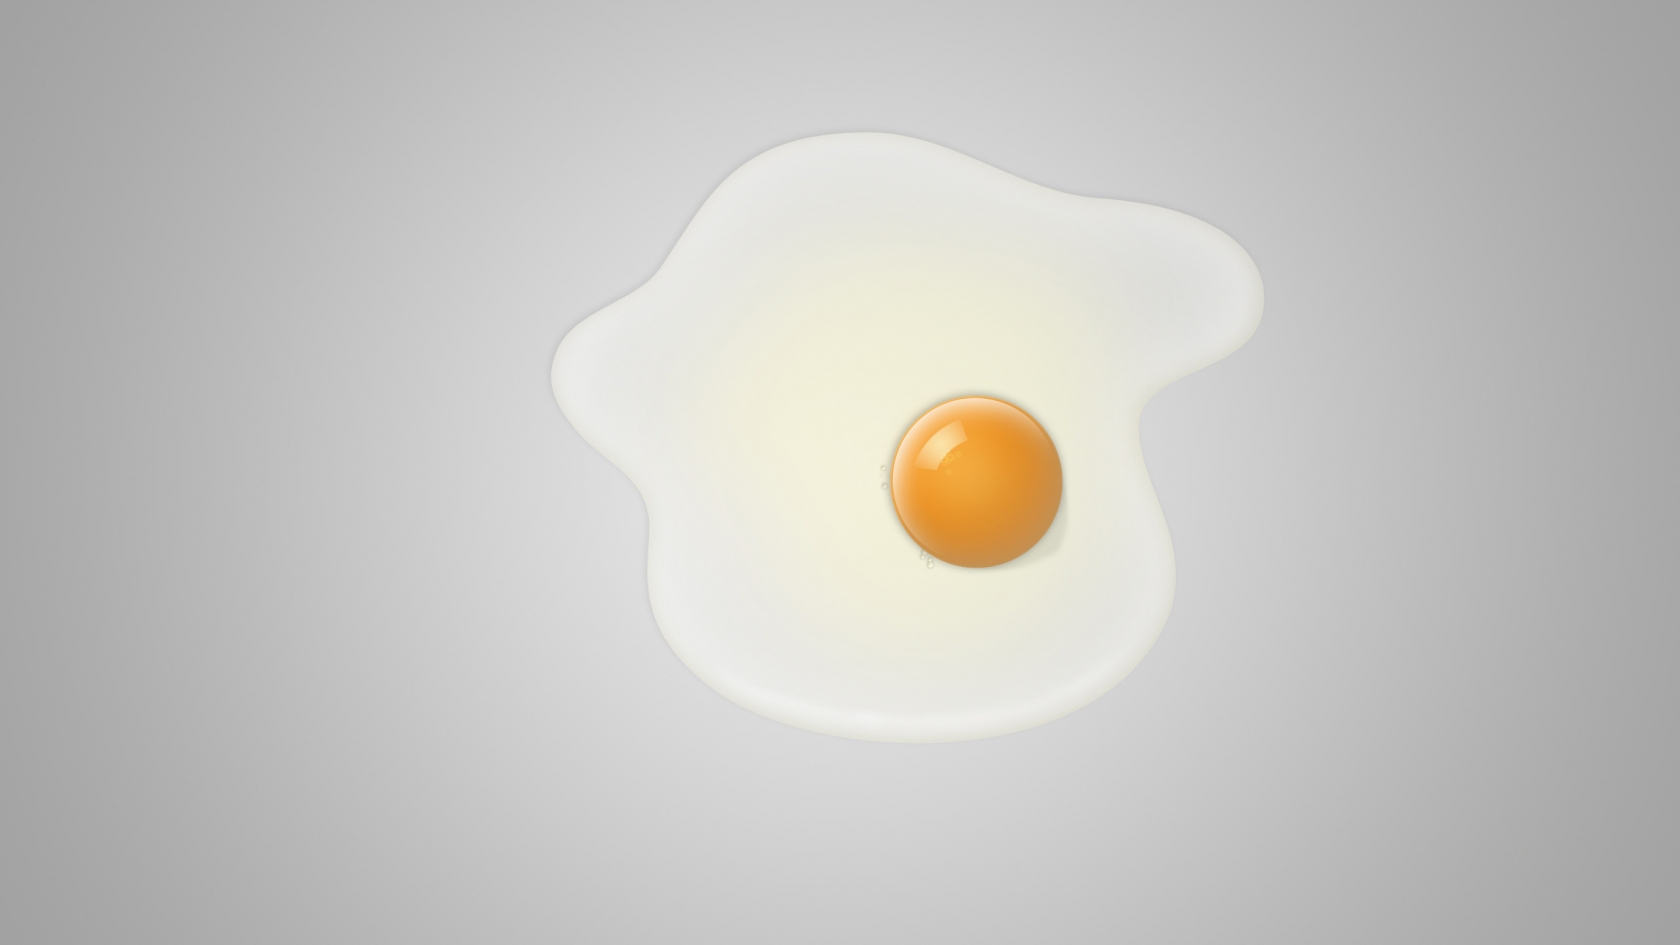 Minimal fried egg for 1680 x 945 HDTV resolution